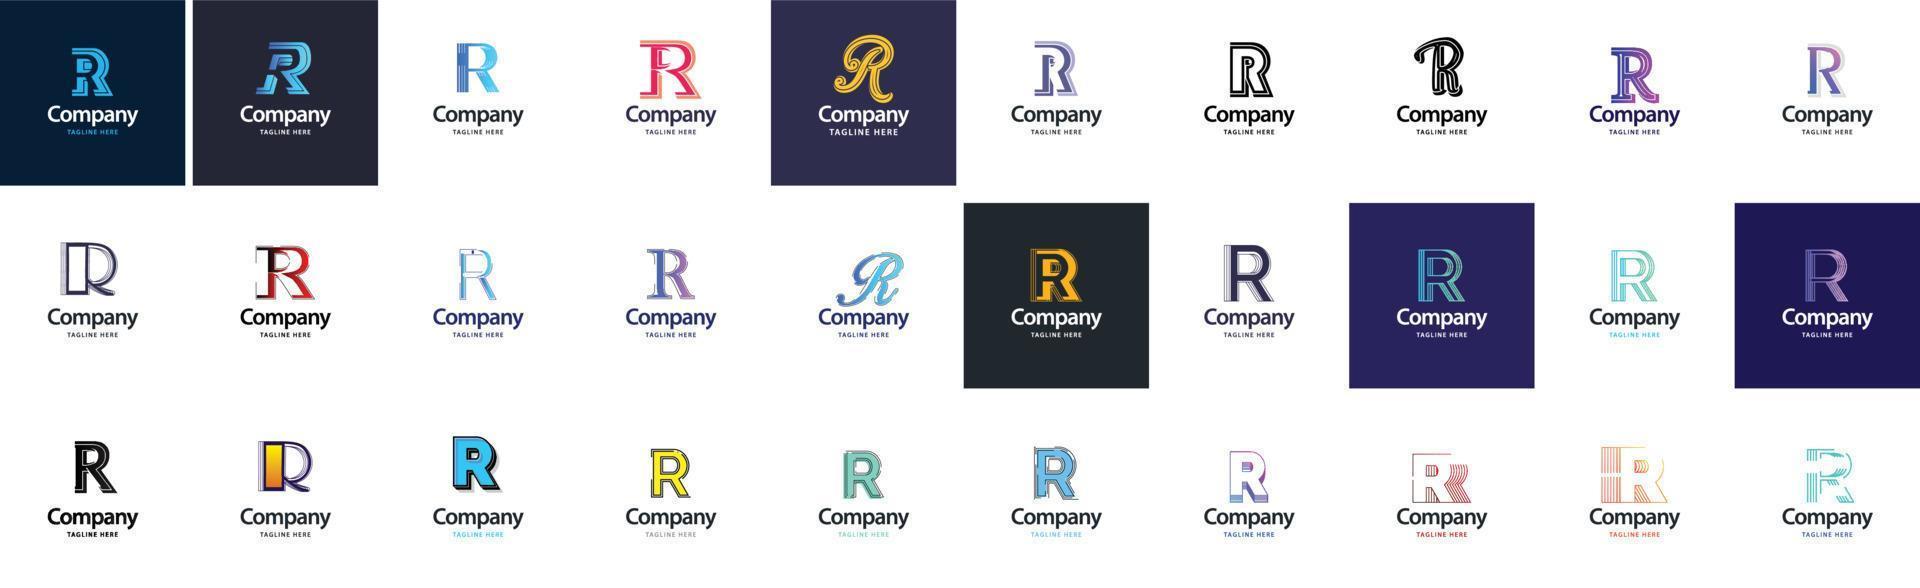 r-Logo-Sammlung. 30 Business-Logo-Sammlung für Finanzunternehmen oder Designagenturen. vektormarkenillustration vektor